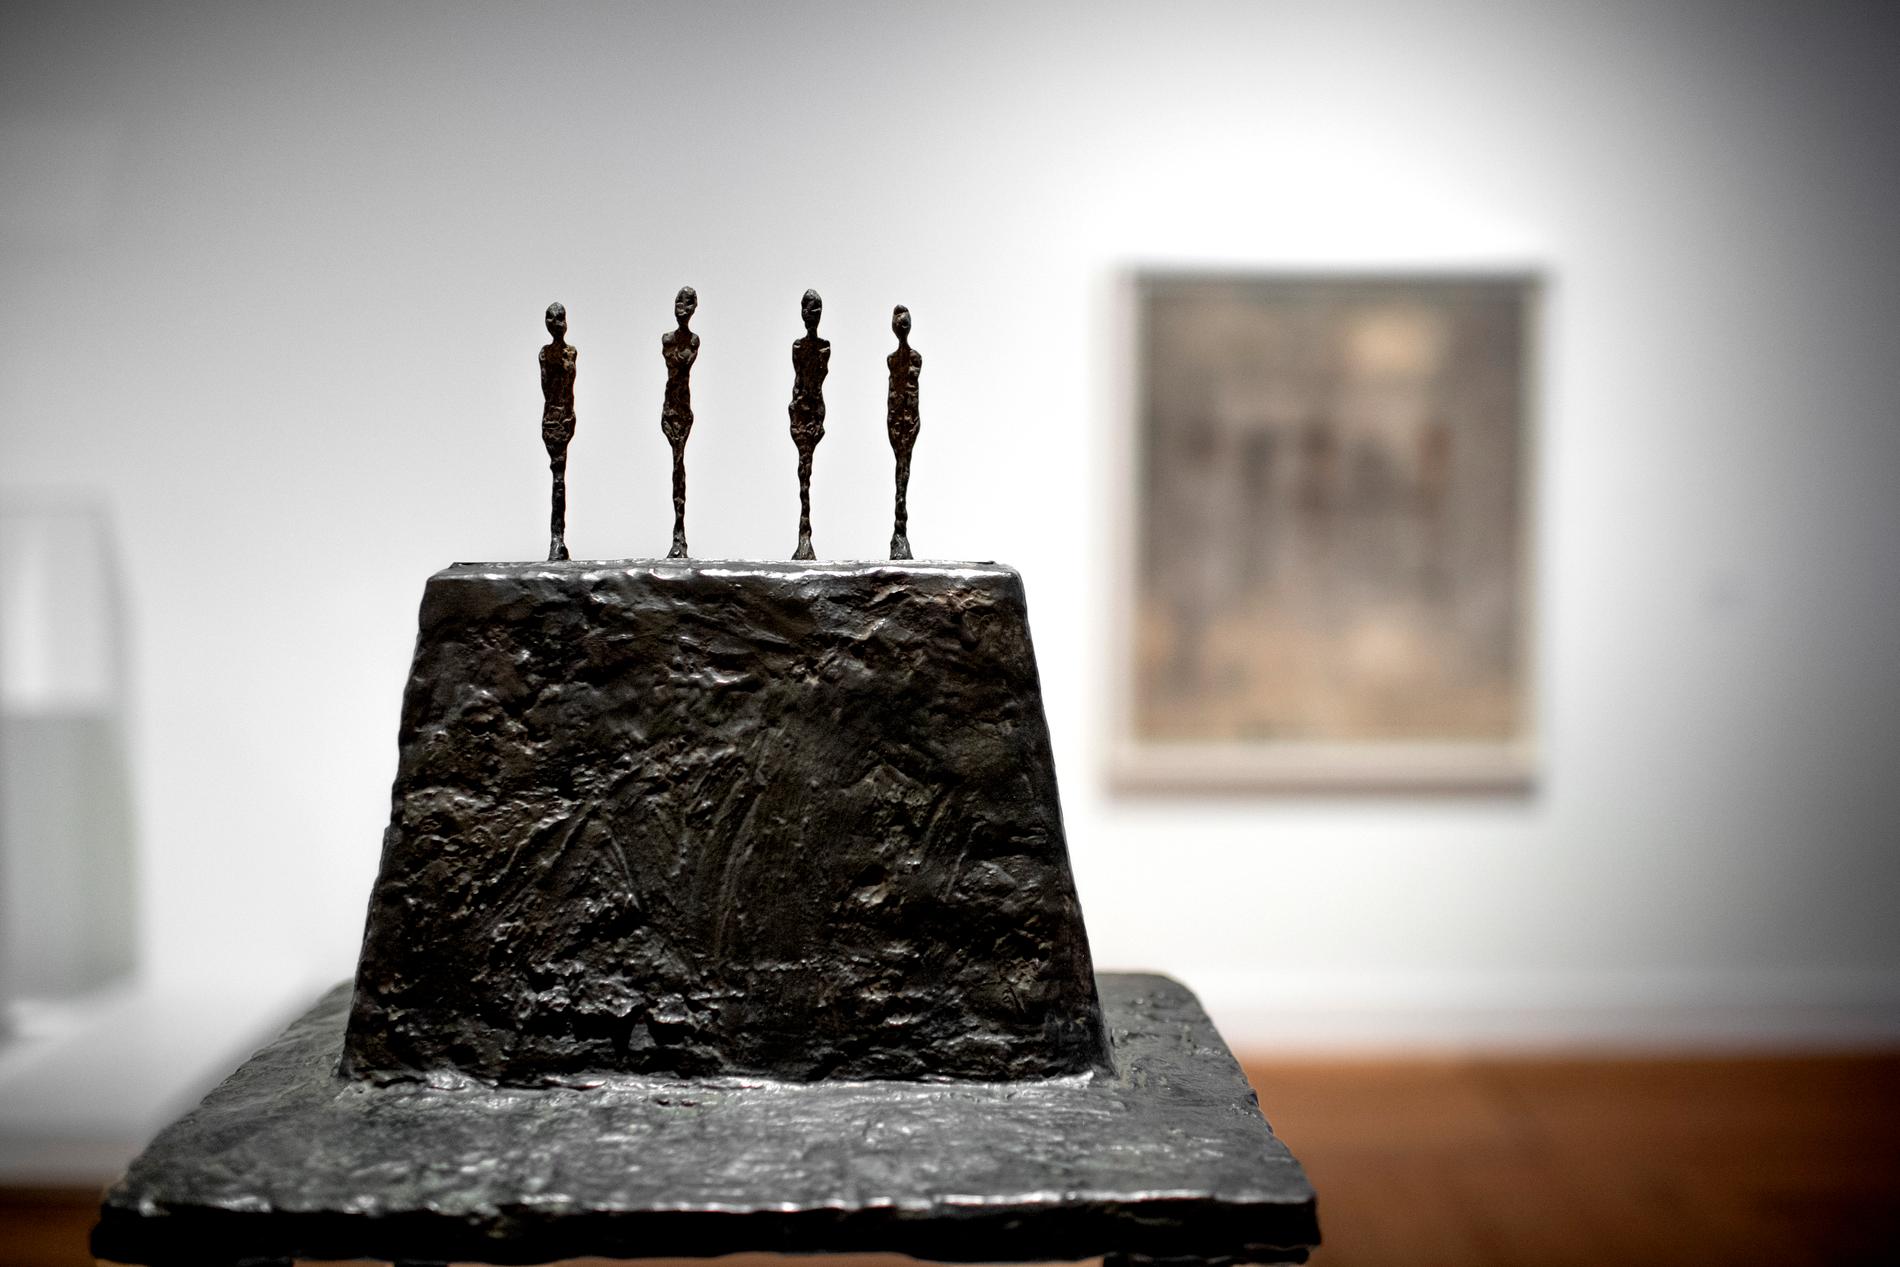 Alberto Giacometti började visa sina verk i slutet på 1920-talet och efter en utställning 1929 blev han upptäckt av flera surrealister, som var mycket inflytelserika i Paris under den tiden. Han var vän med bland andra Picasso, Salvador Dali, Georges Bataille och Samuel Beckett.